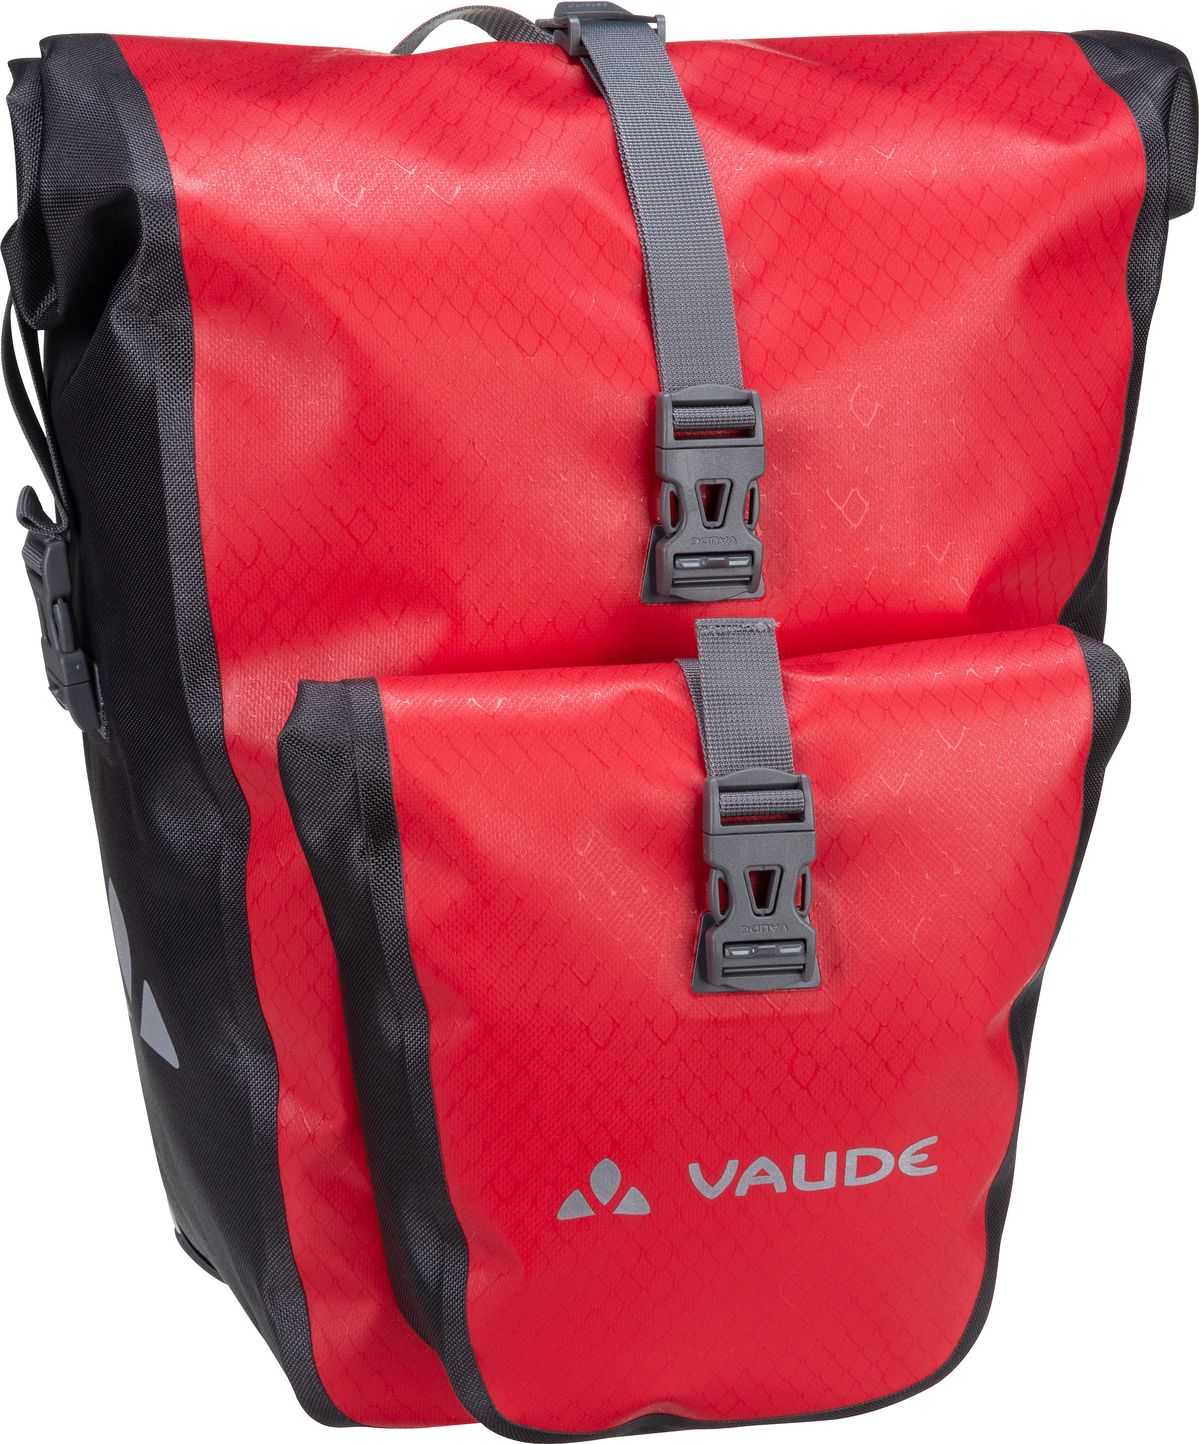 Vaude Aqua Back Plus  in Red (51 Liter), Fahrradtasche